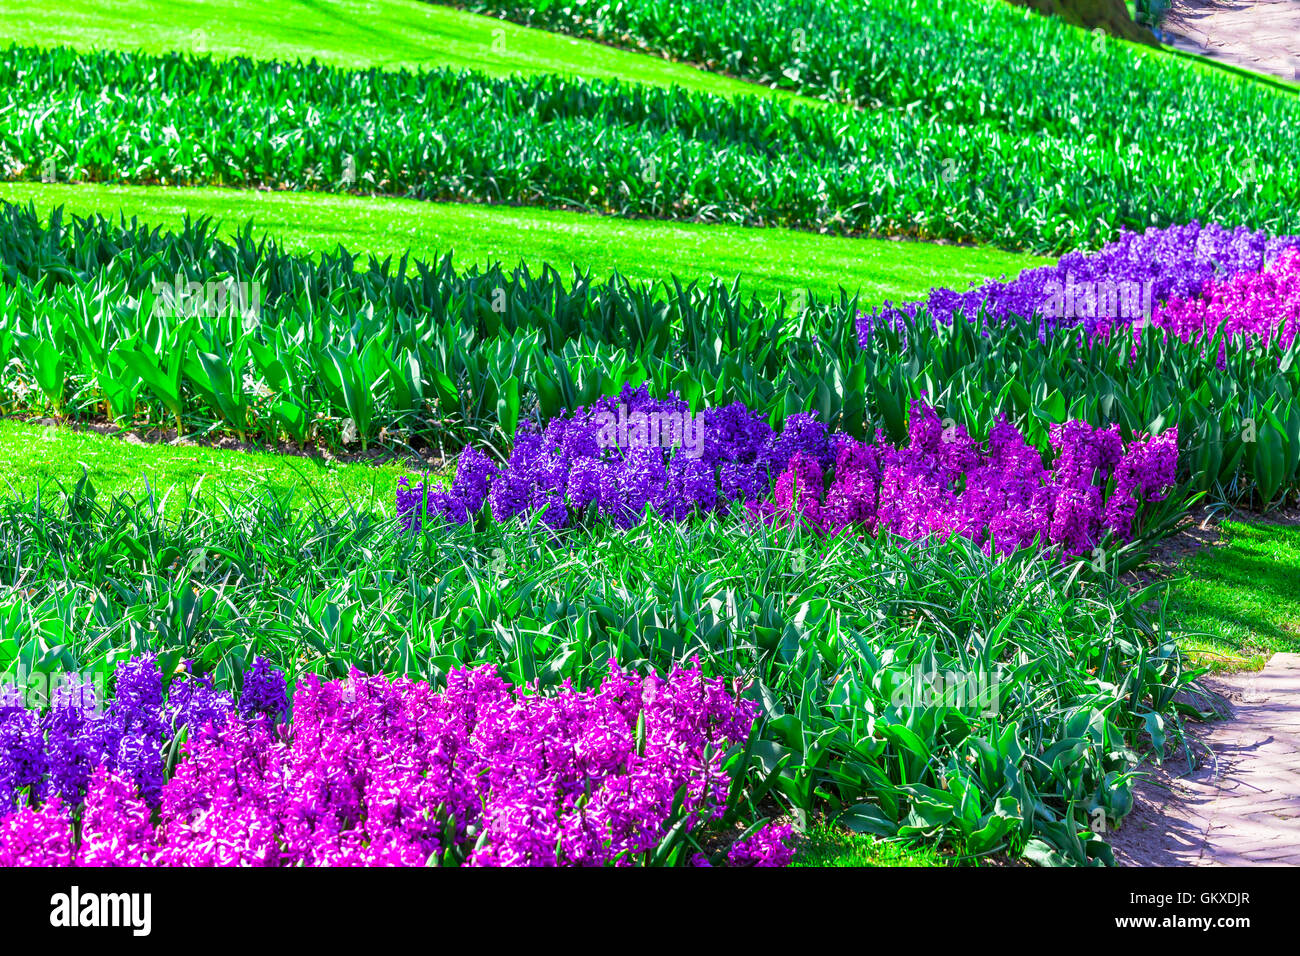 Fioritura di tulipani colorati nel famoso parco fgloral Keukenhof in Olanda Foto Stock